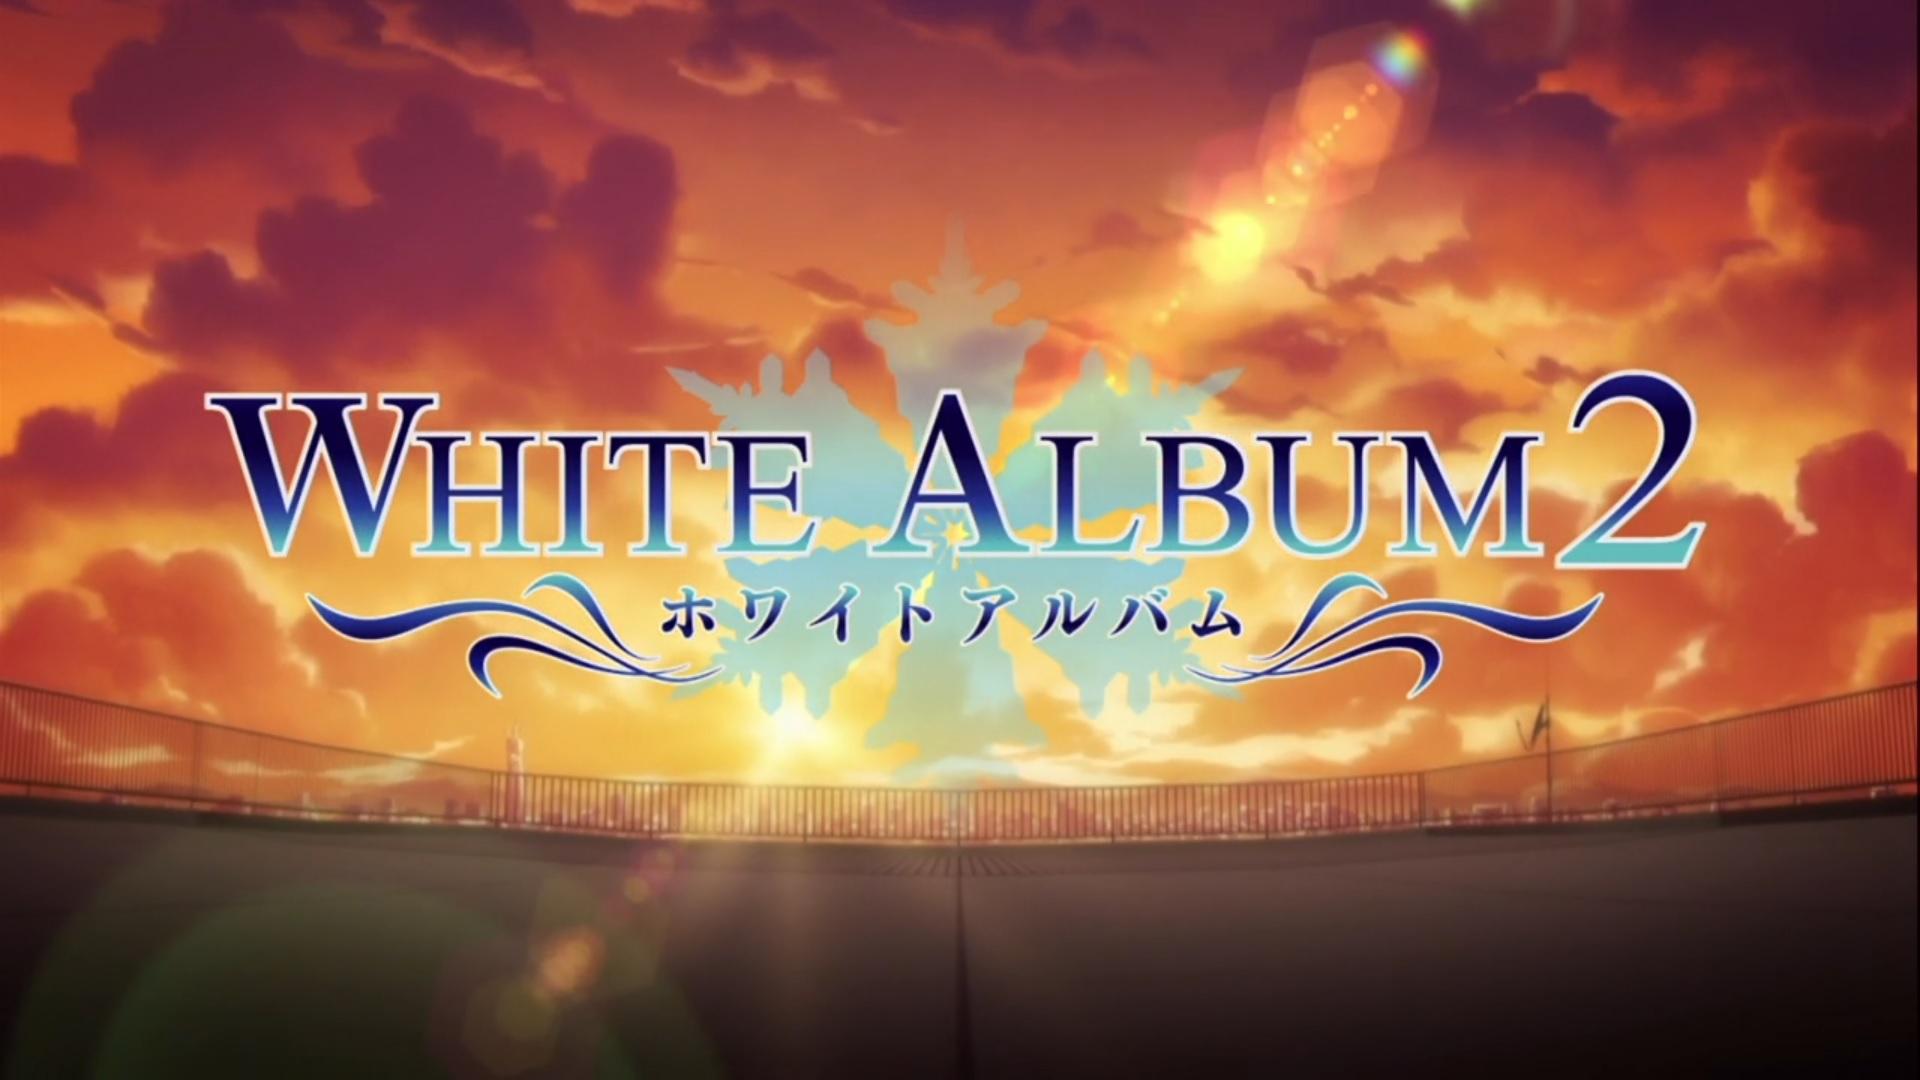 White Album 2